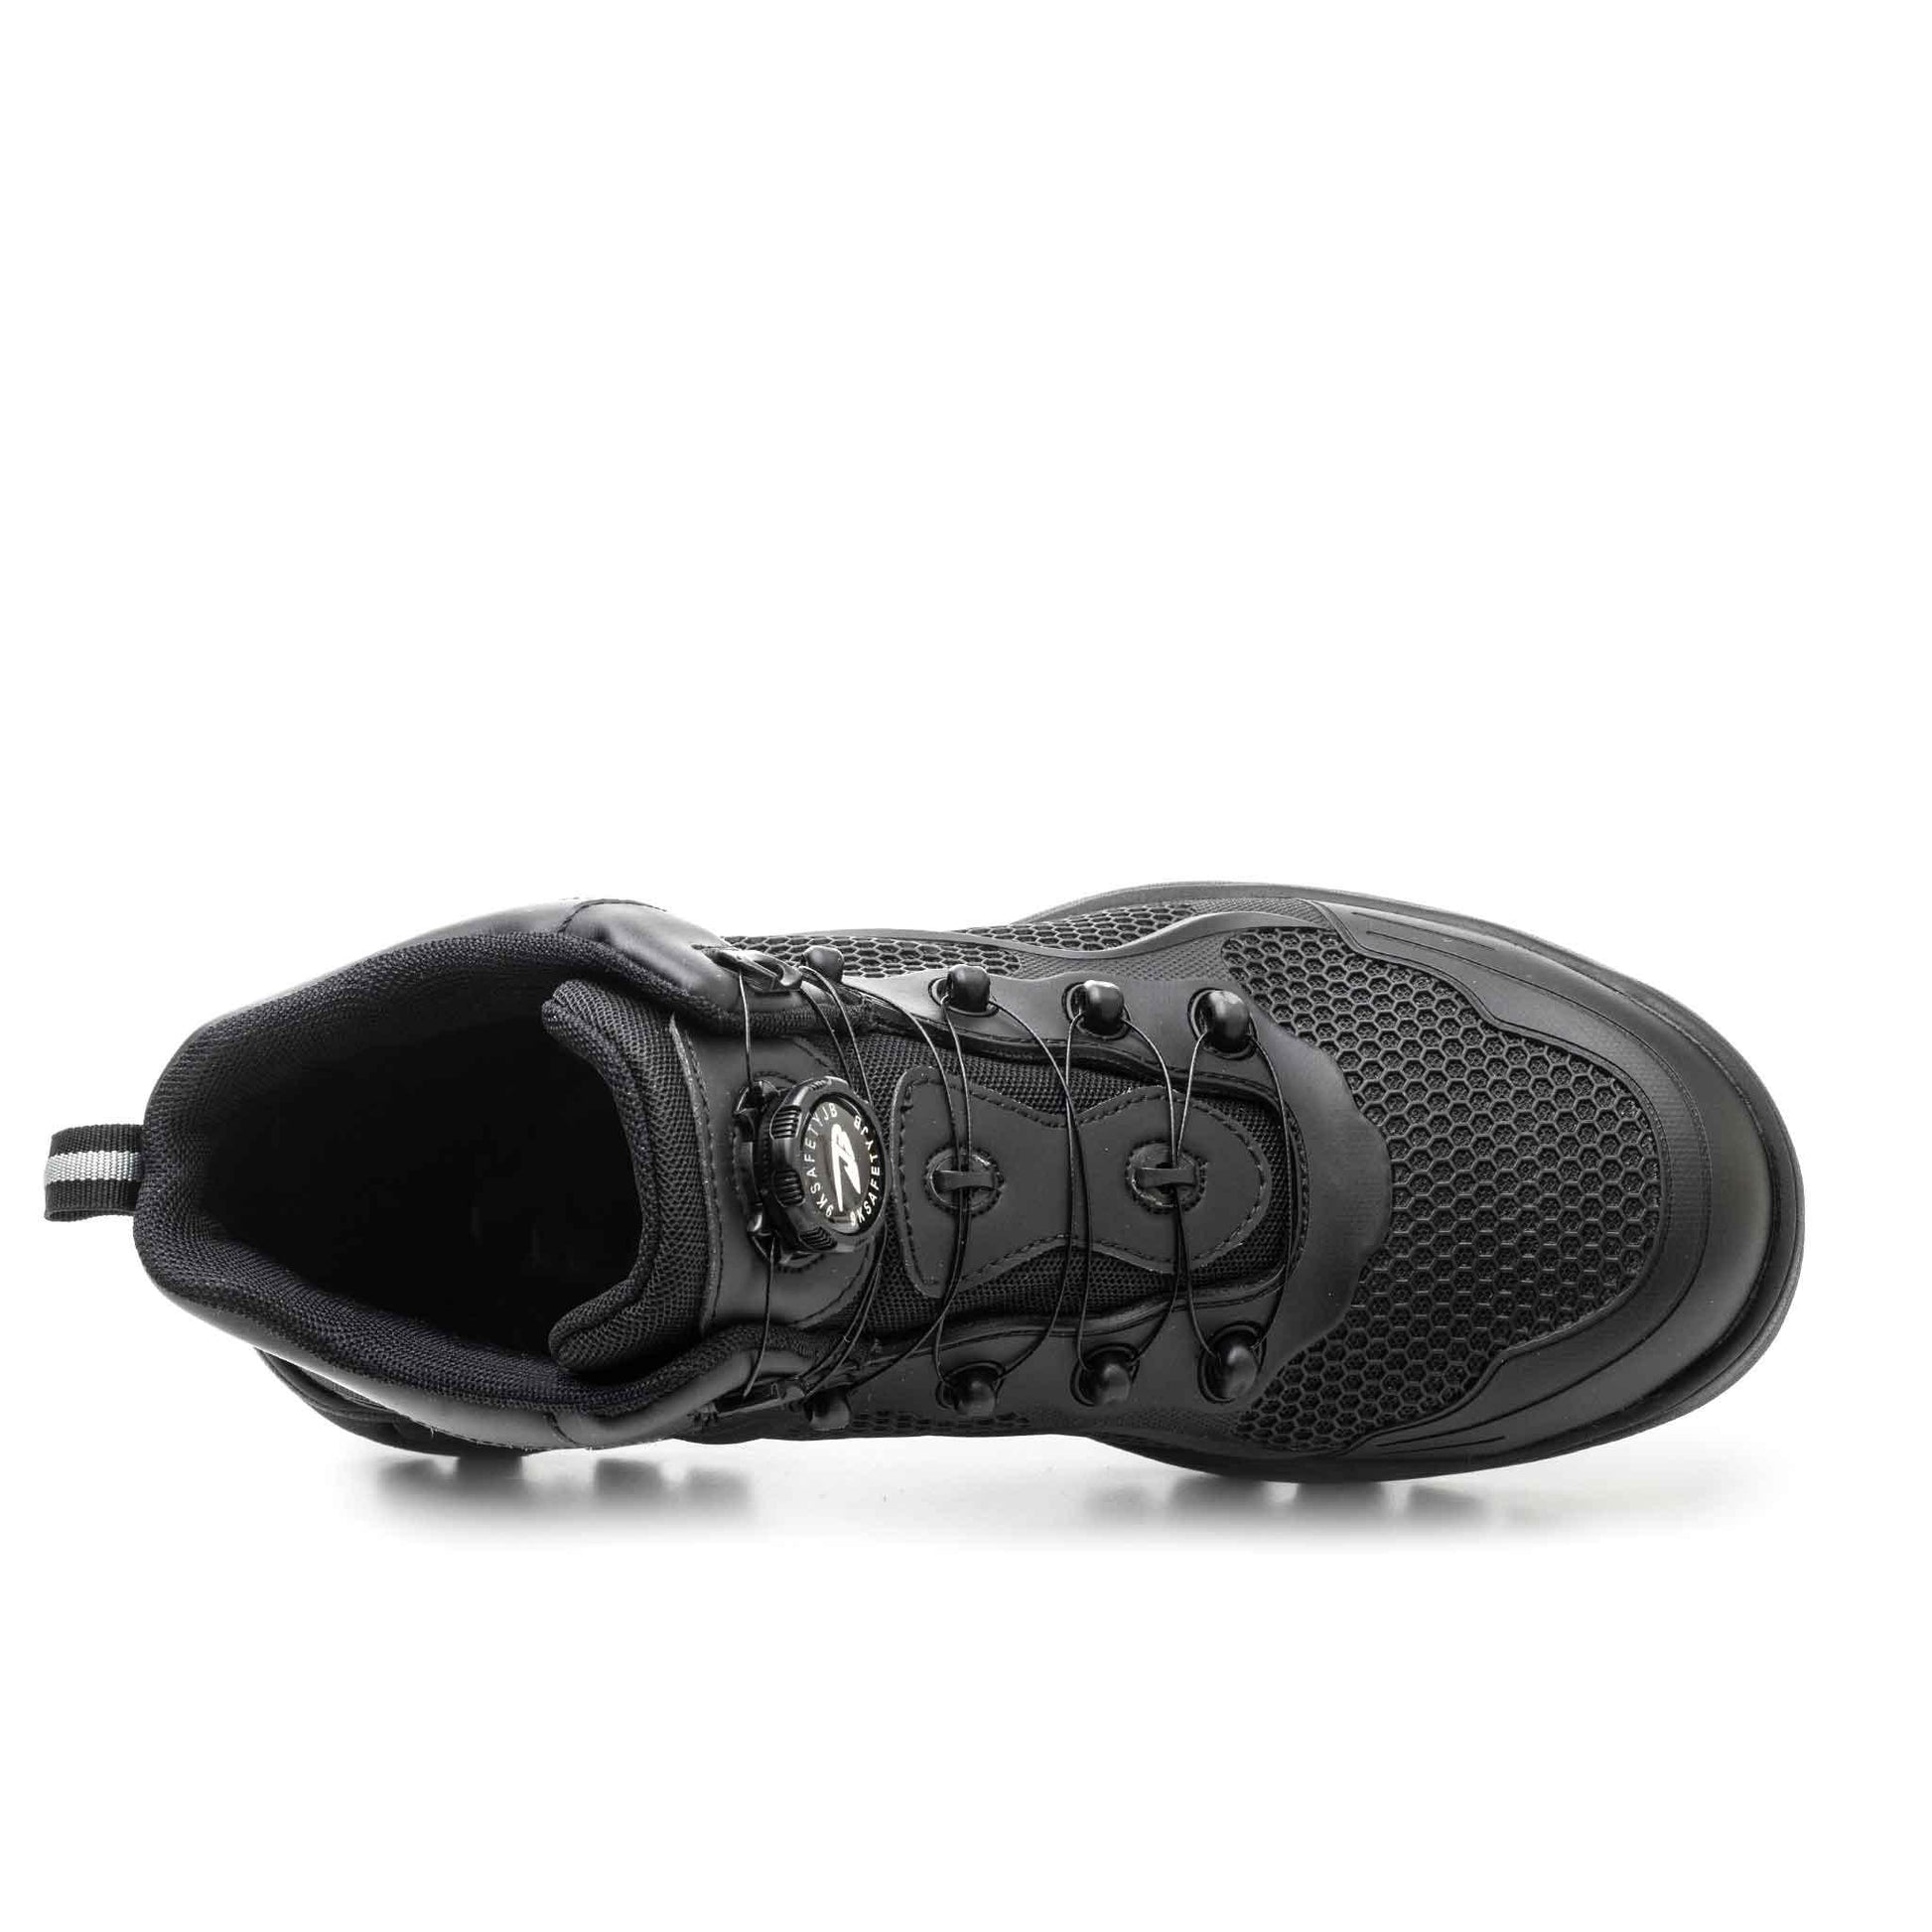 Women's Steel Toe Work Boots - Rotating Shoelaces | B217 - USINE PRO Footwear